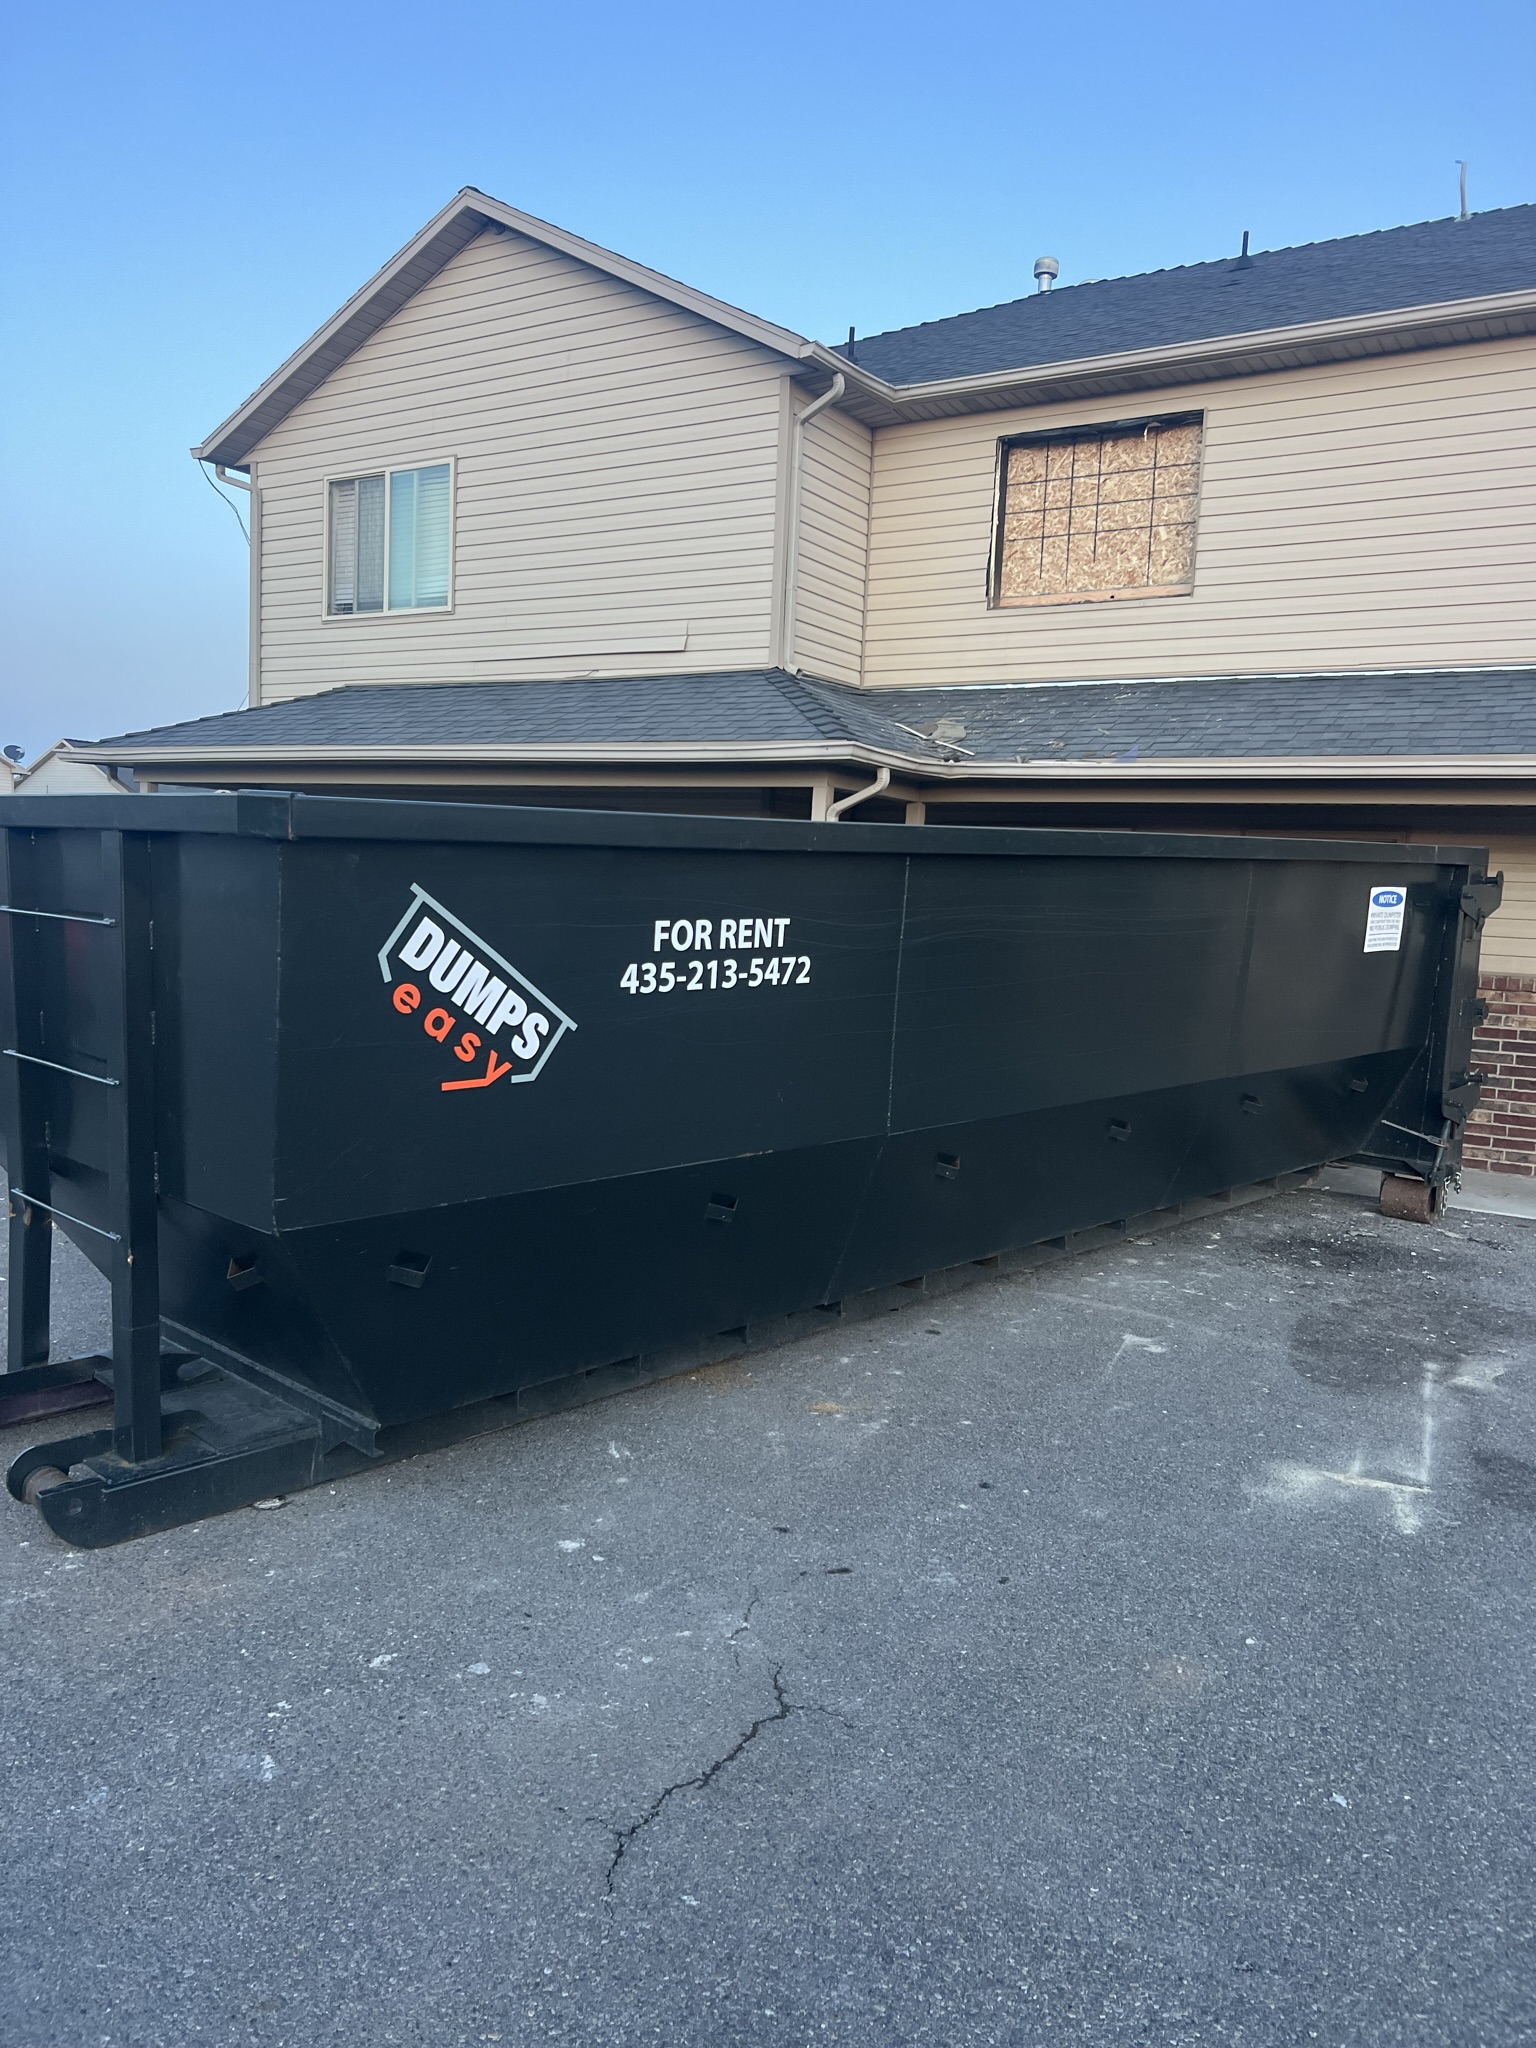 dumpster rental utah company